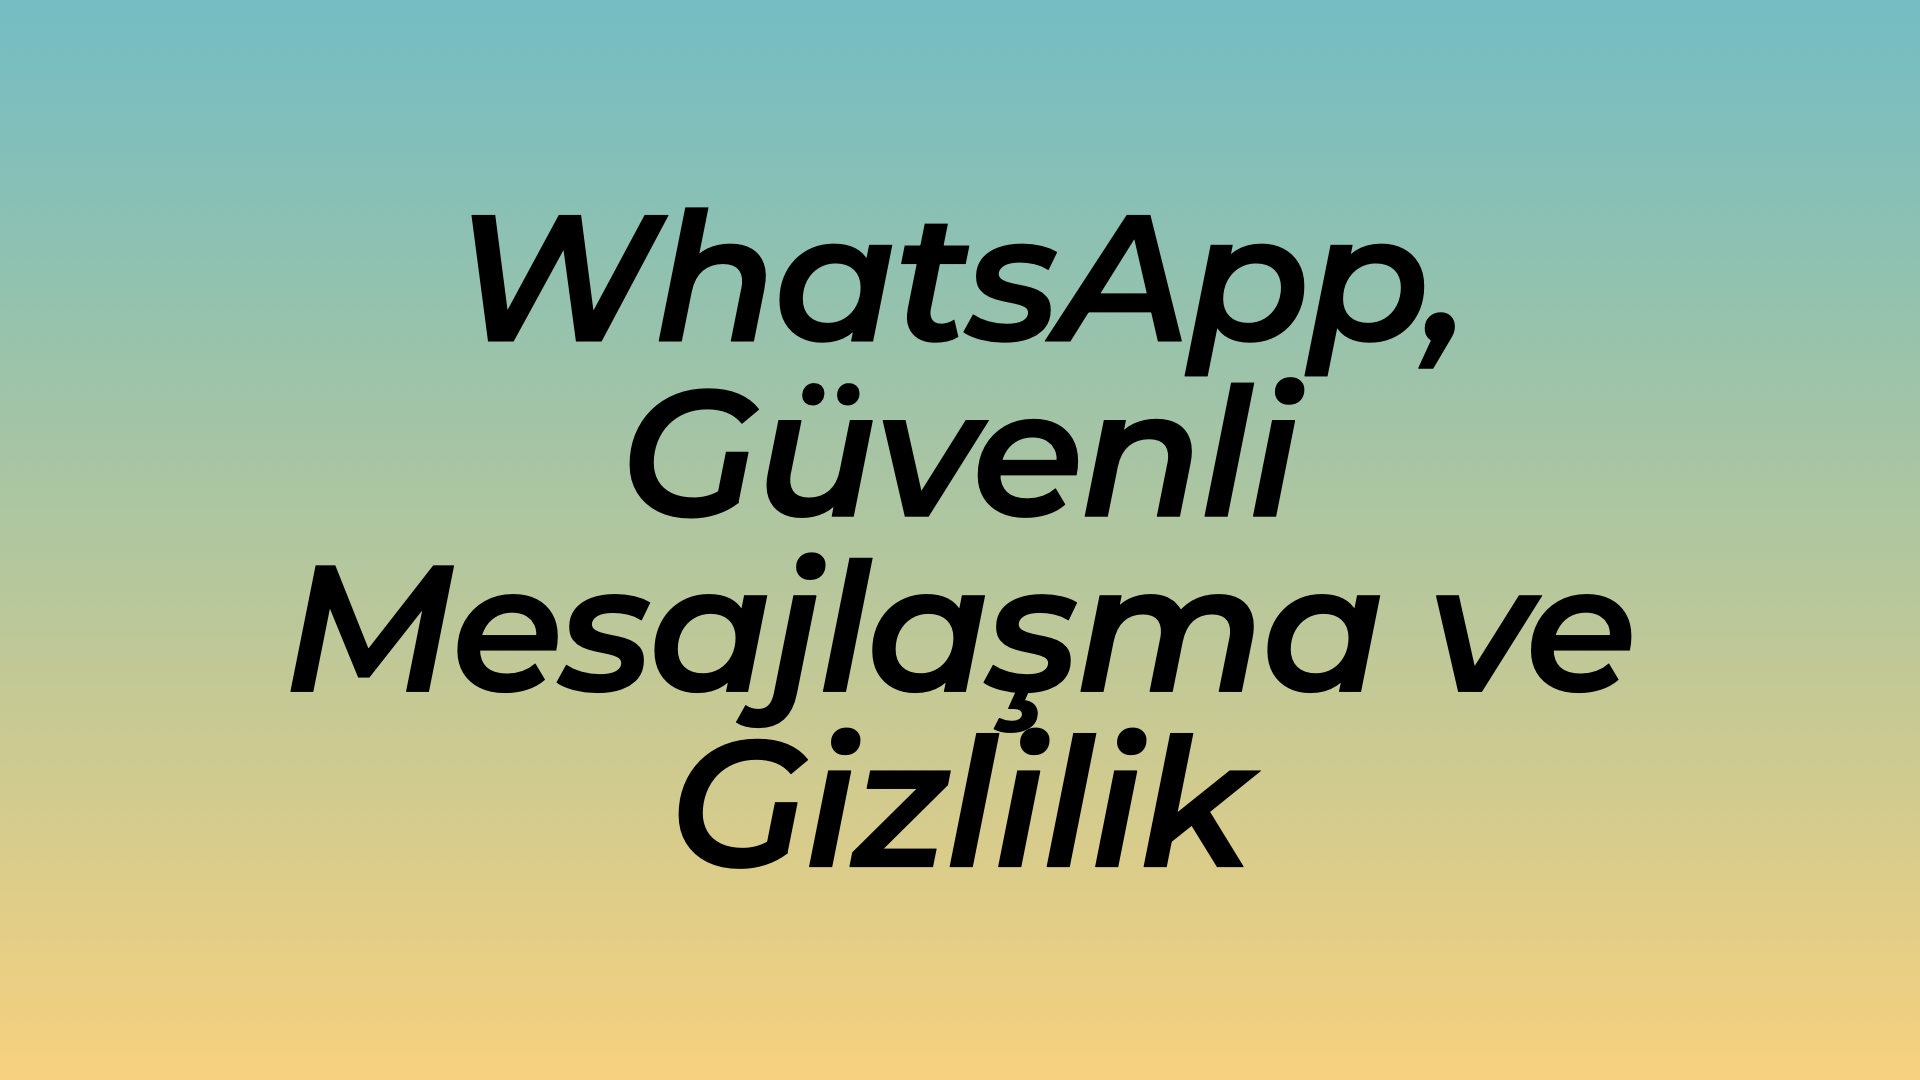 WhatsApp, Güvenli Mesajlaşma ve Gizlilik